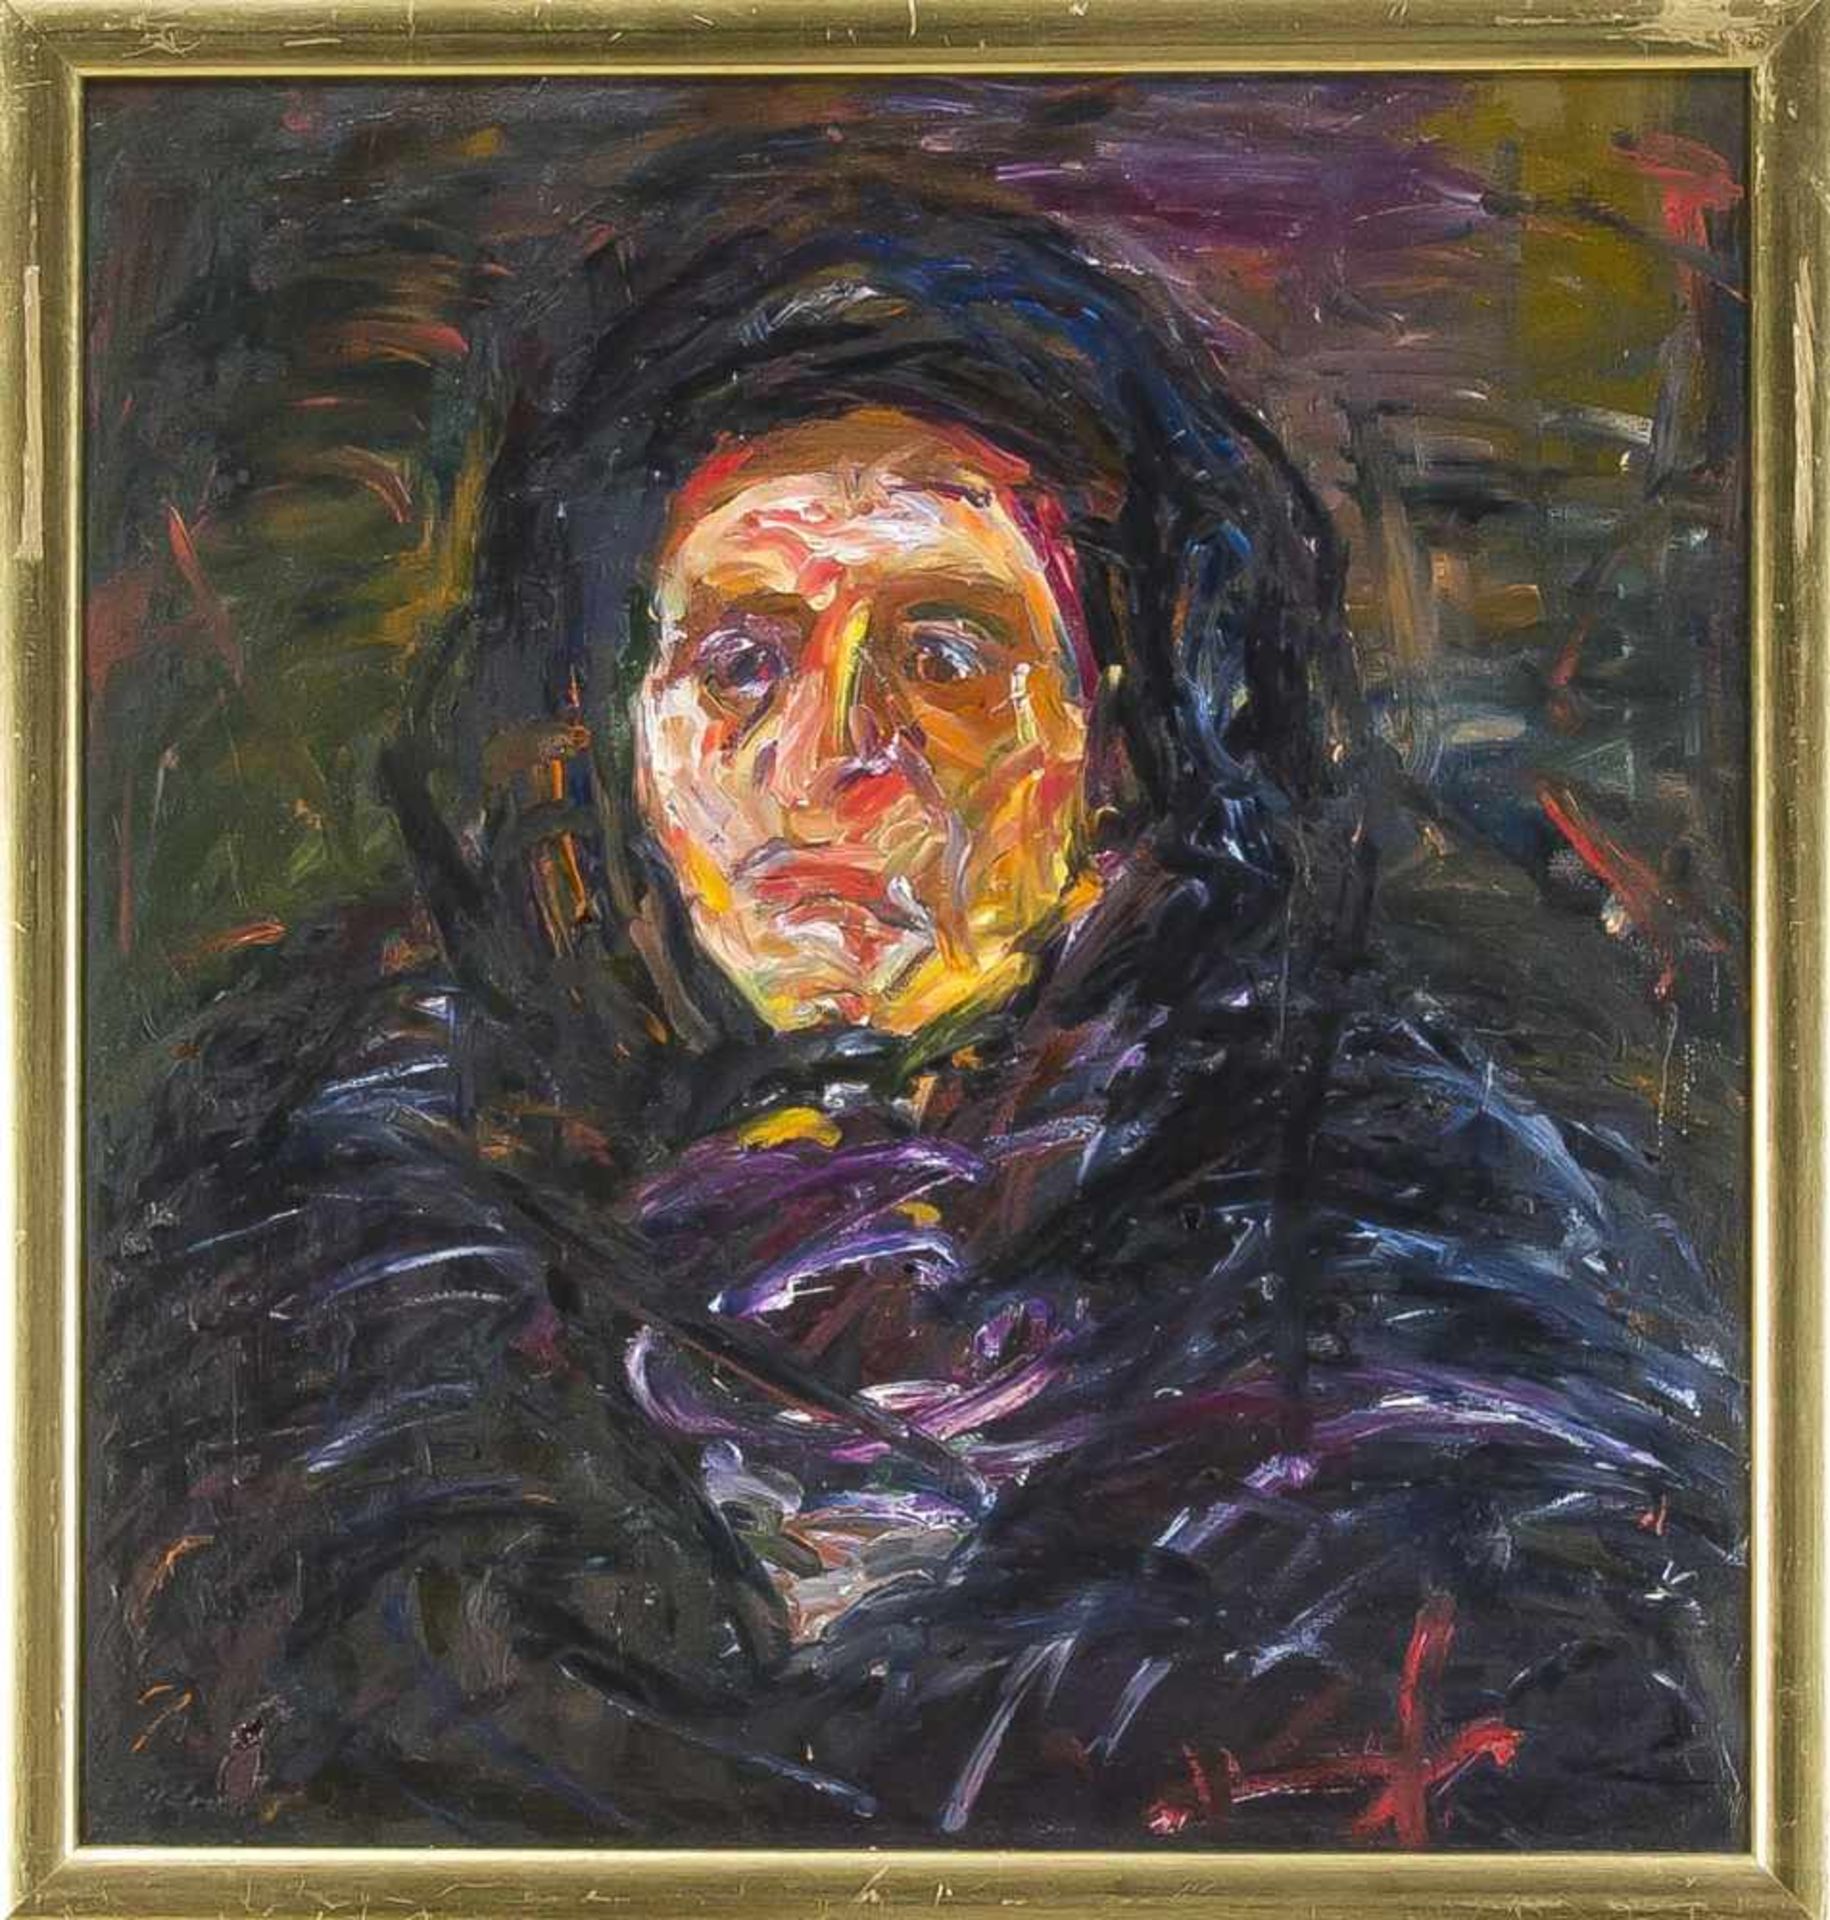 Rachman Shichaliew (*1957), zeitgenössischer russischer Maler, studierte inBaku/Aserbaidschan.